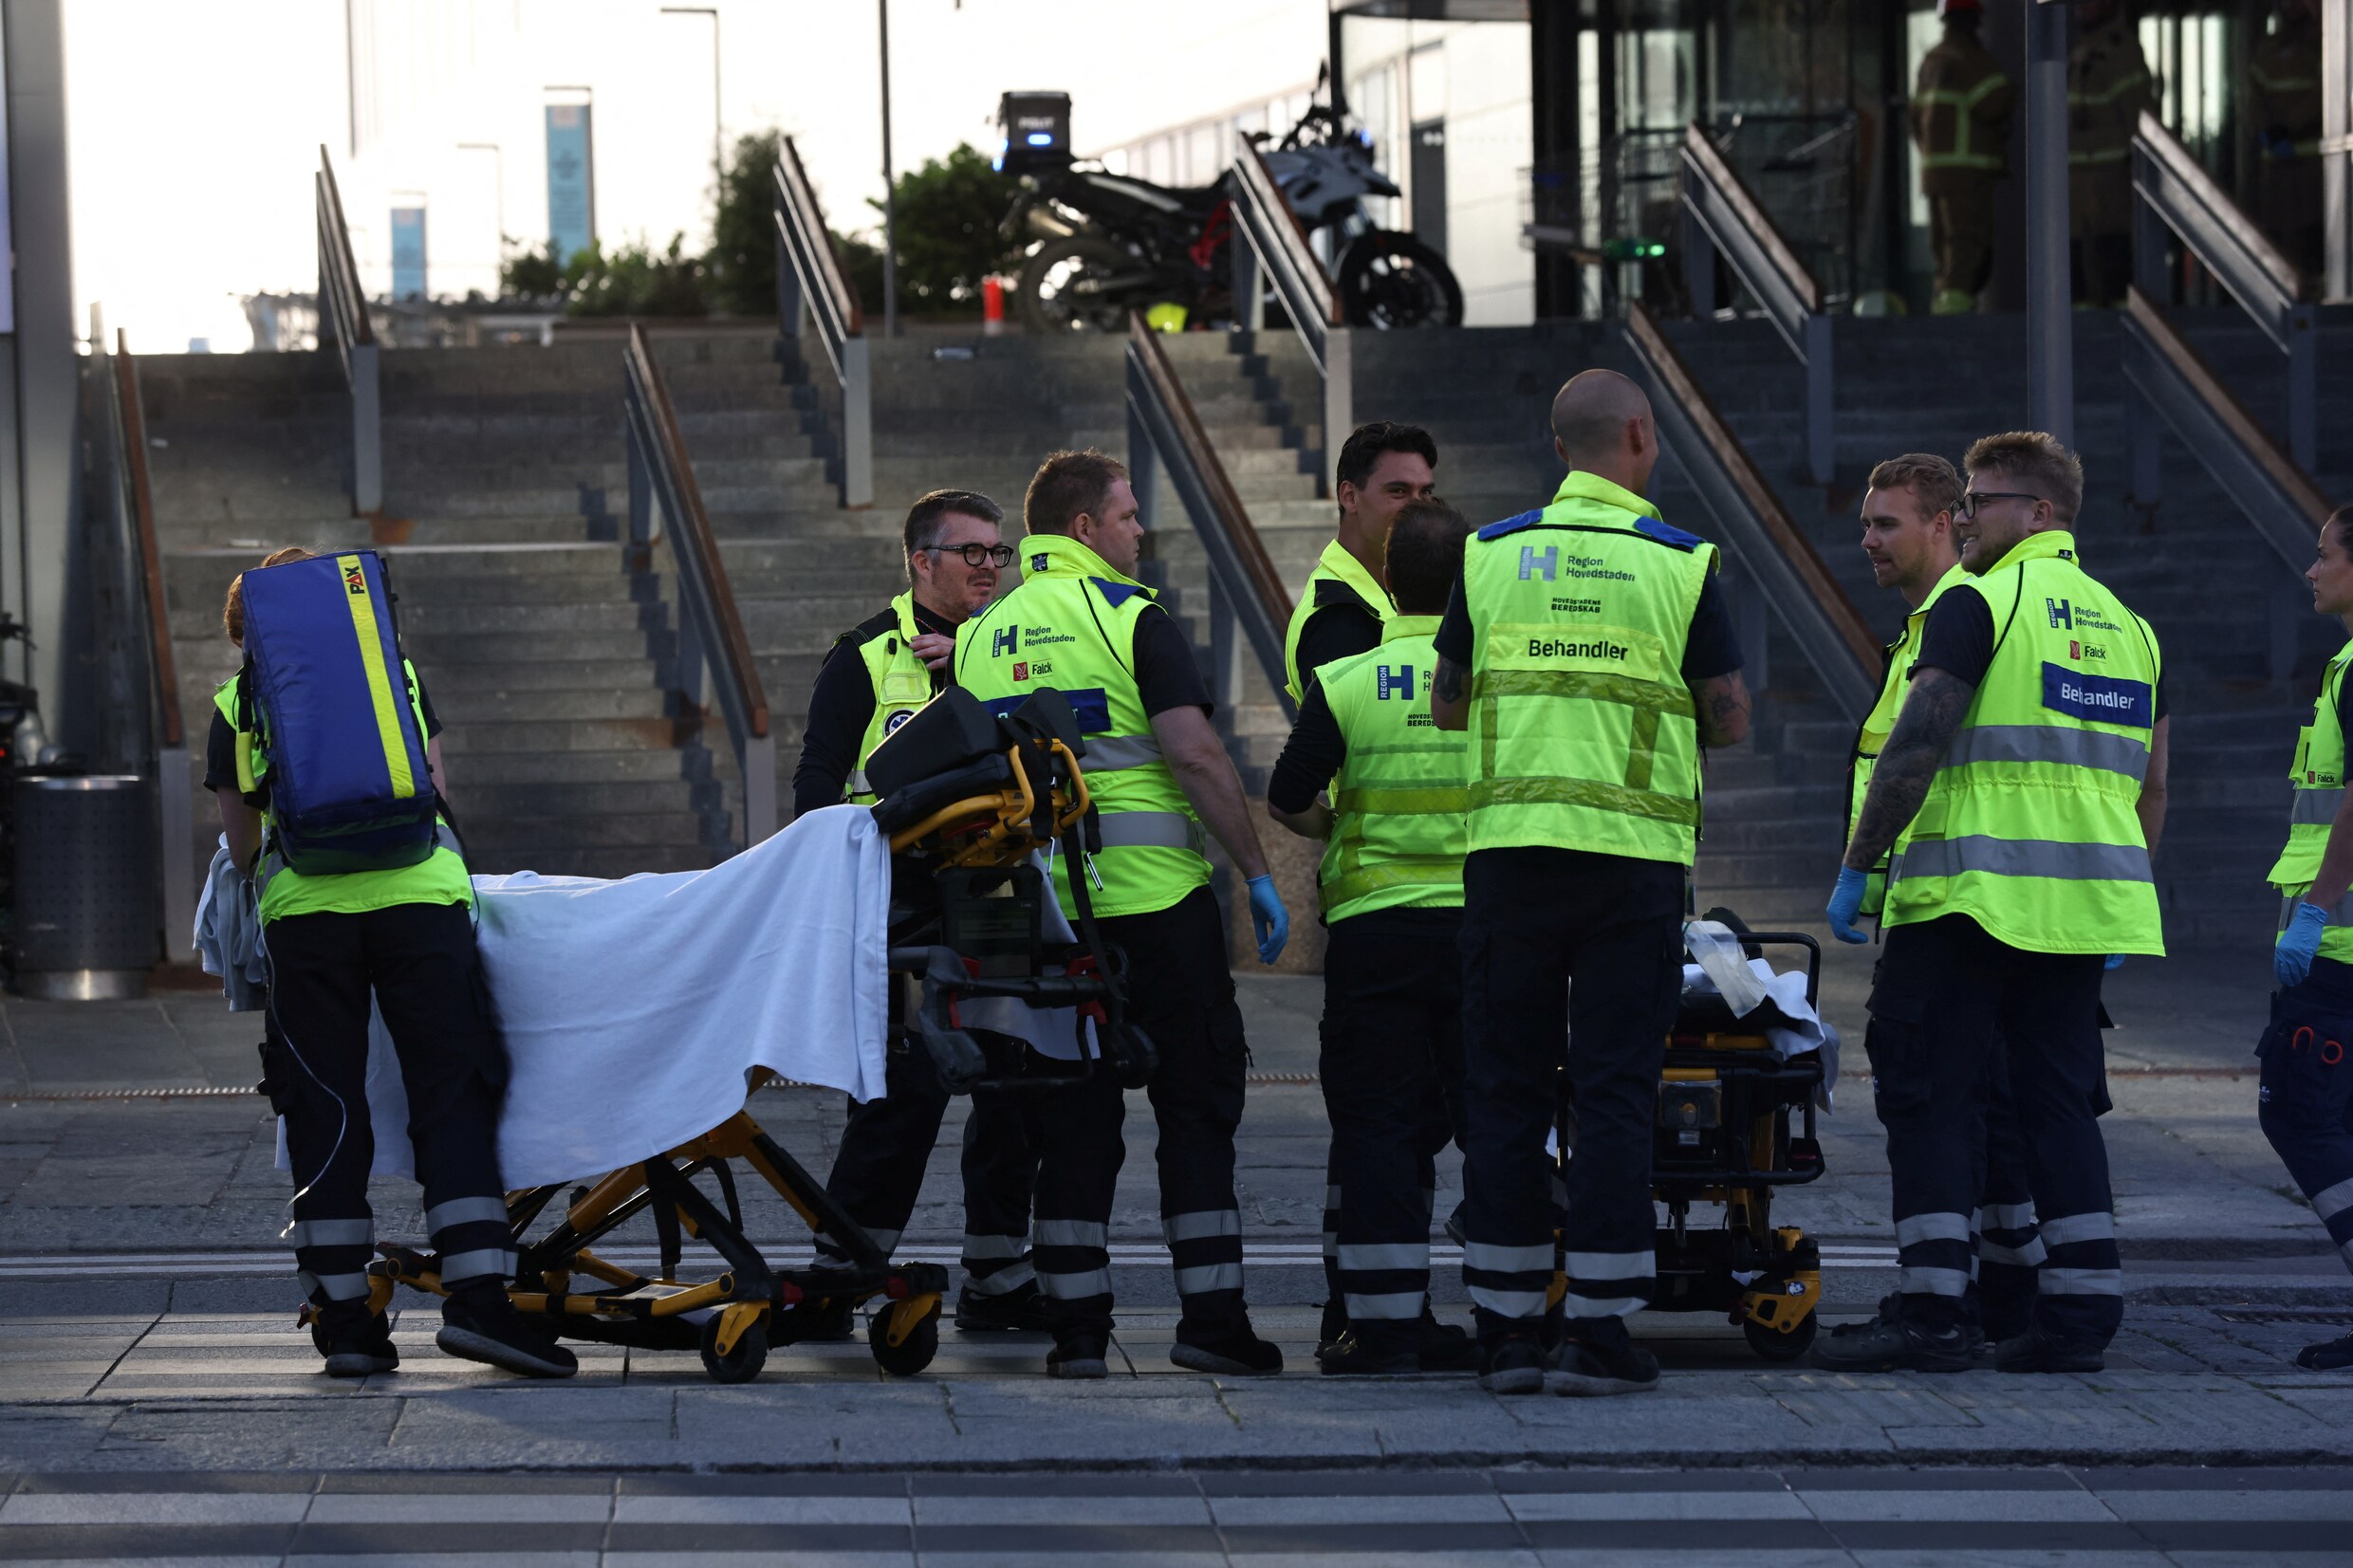 Man die drie mensen doodschoot in winkelcentrum Kopenhagen had psychiatrische problemen: dit weten we nu over de schietpartij